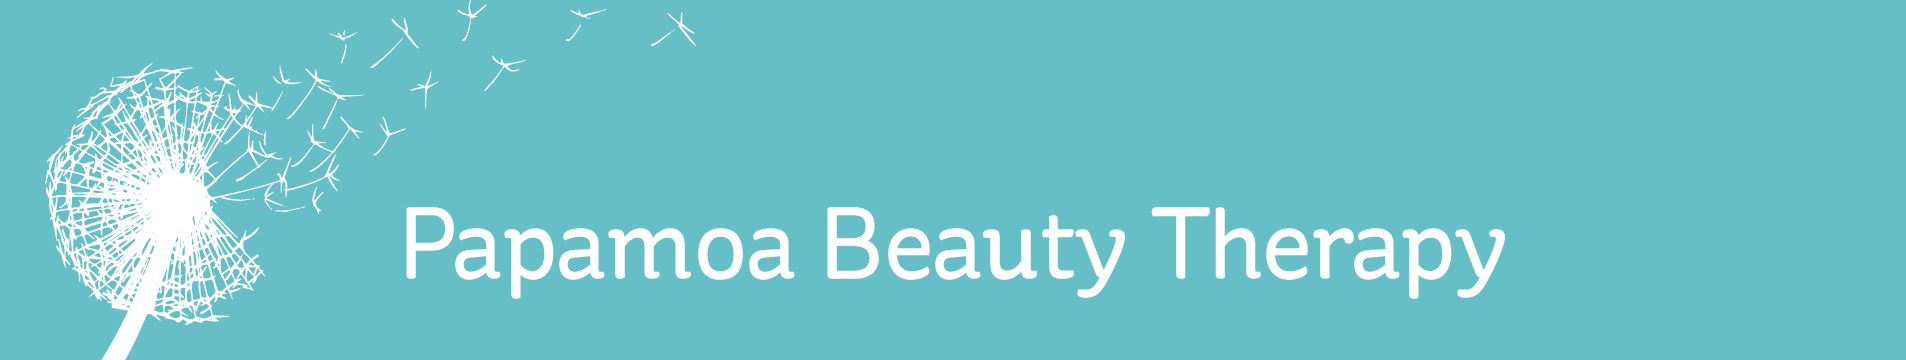 Papamoa Beauty Therapy